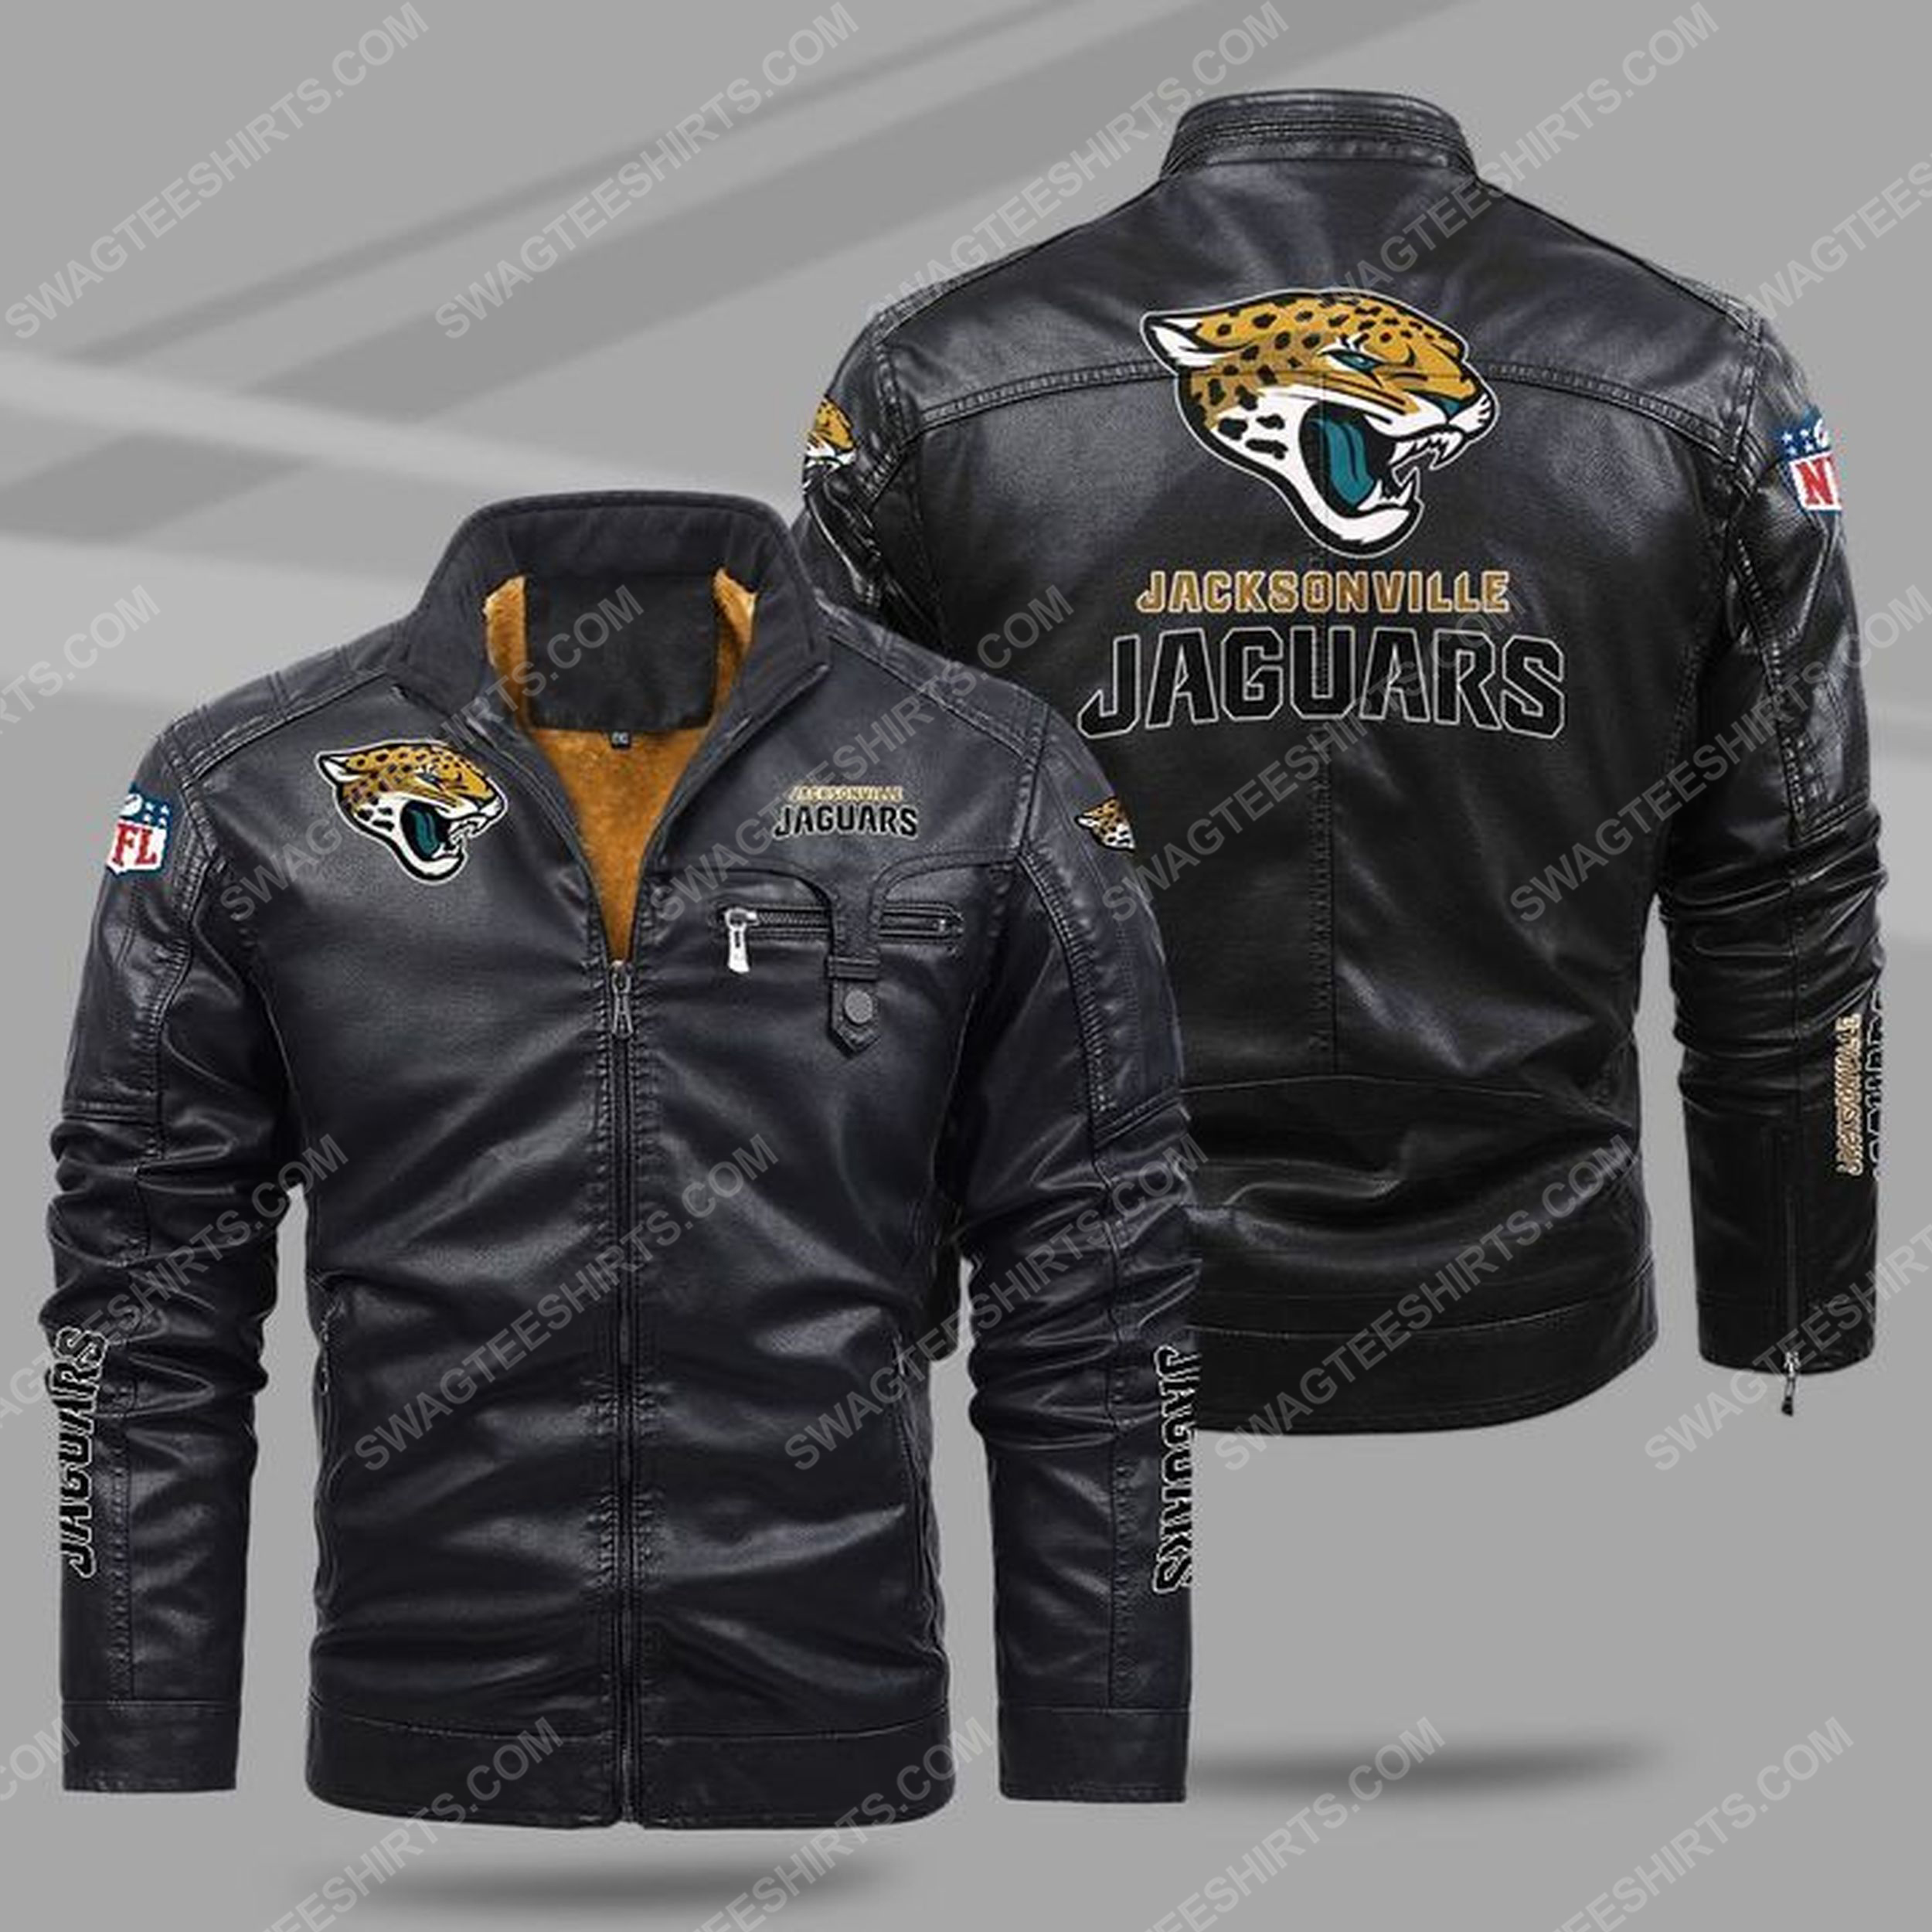 The jacksonville jaguars nfl all over print fleece leather jacket - black 1 - Copy